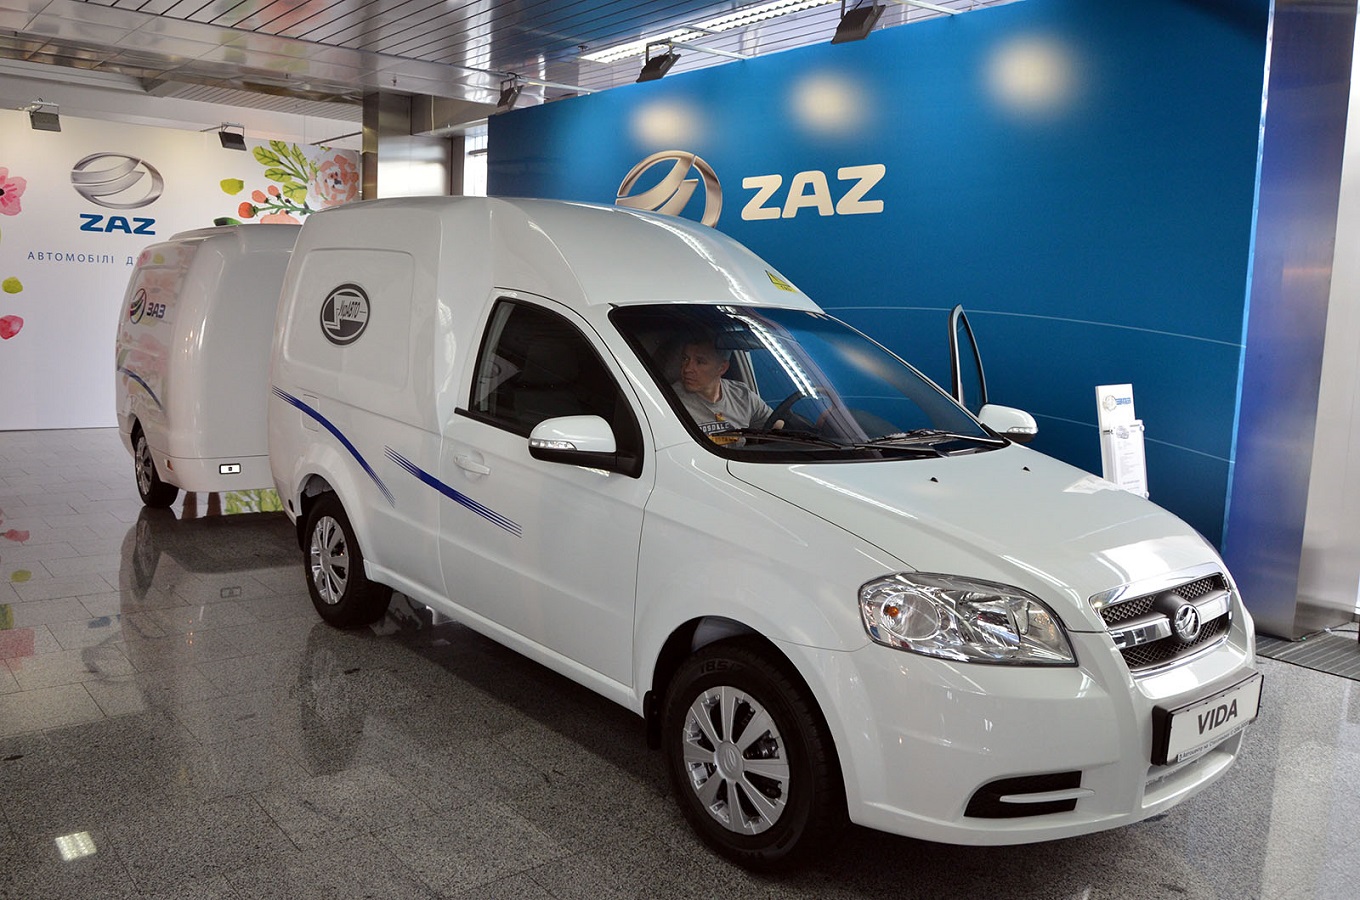 ЗАЗ начал продавать фургон Vida Cargo